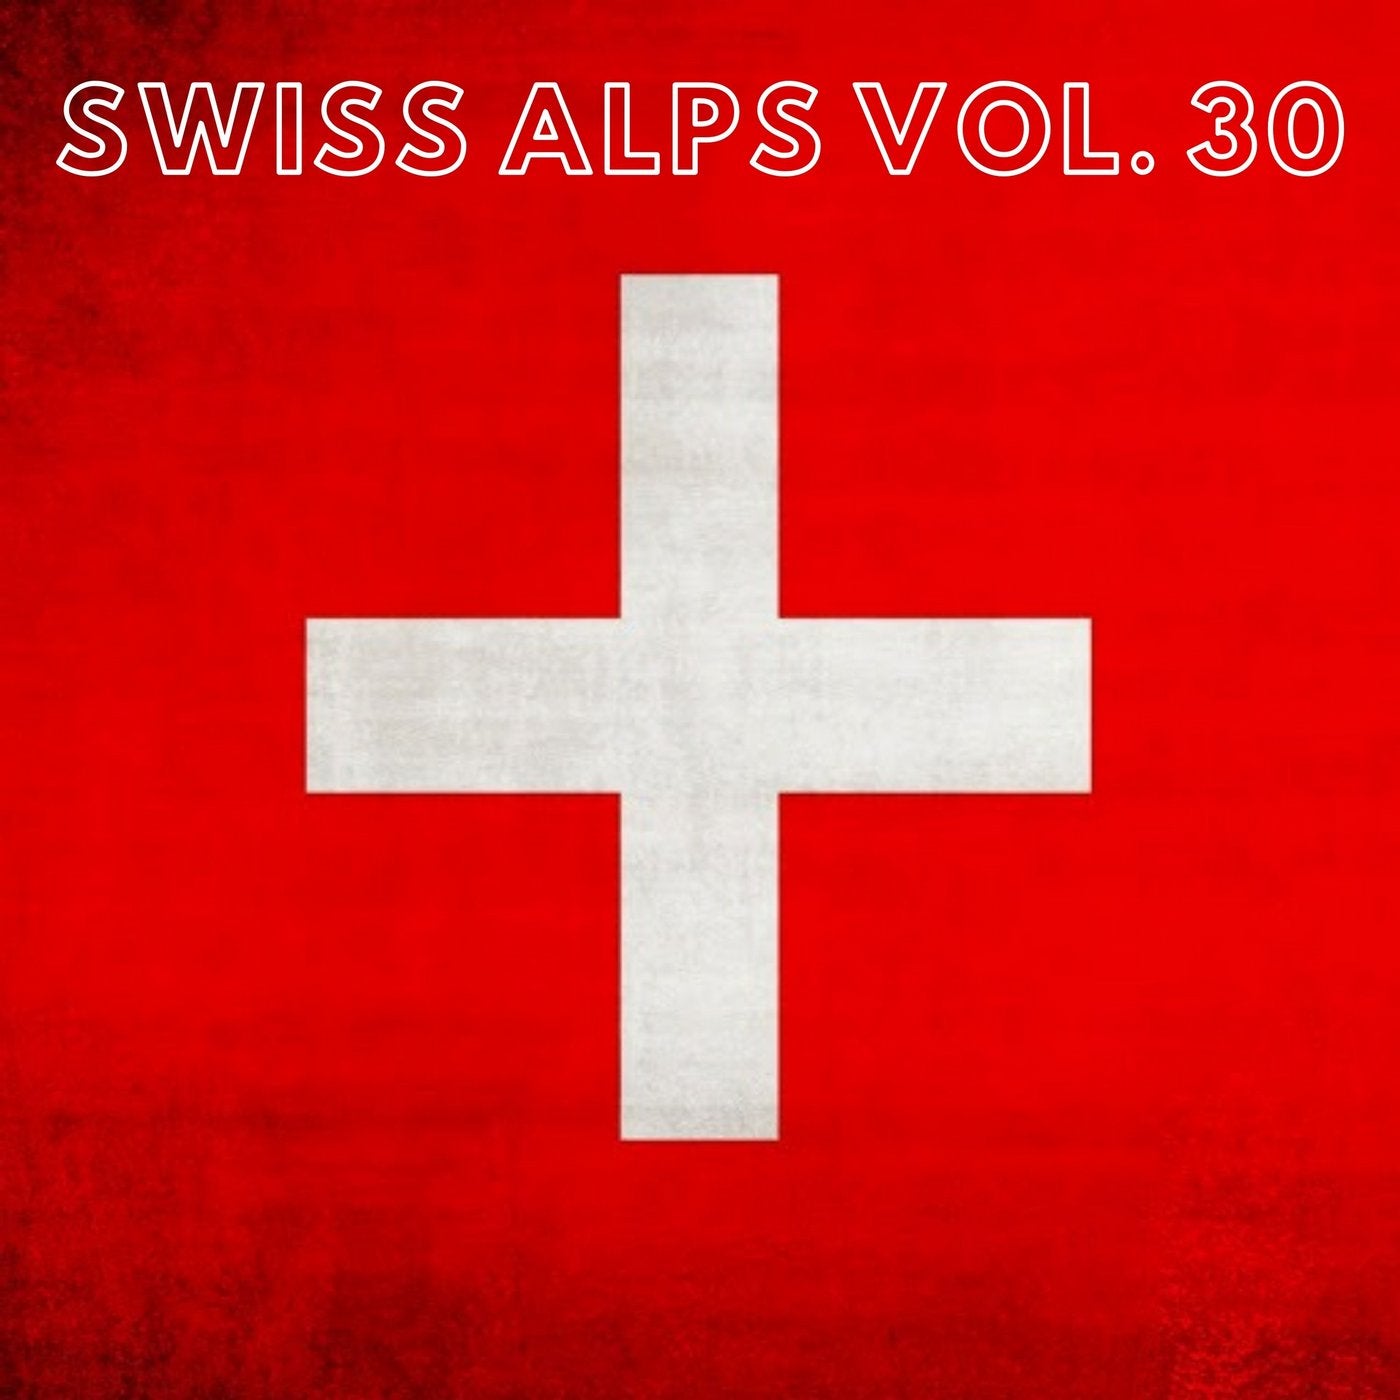 Swiss Alps Vol. 30